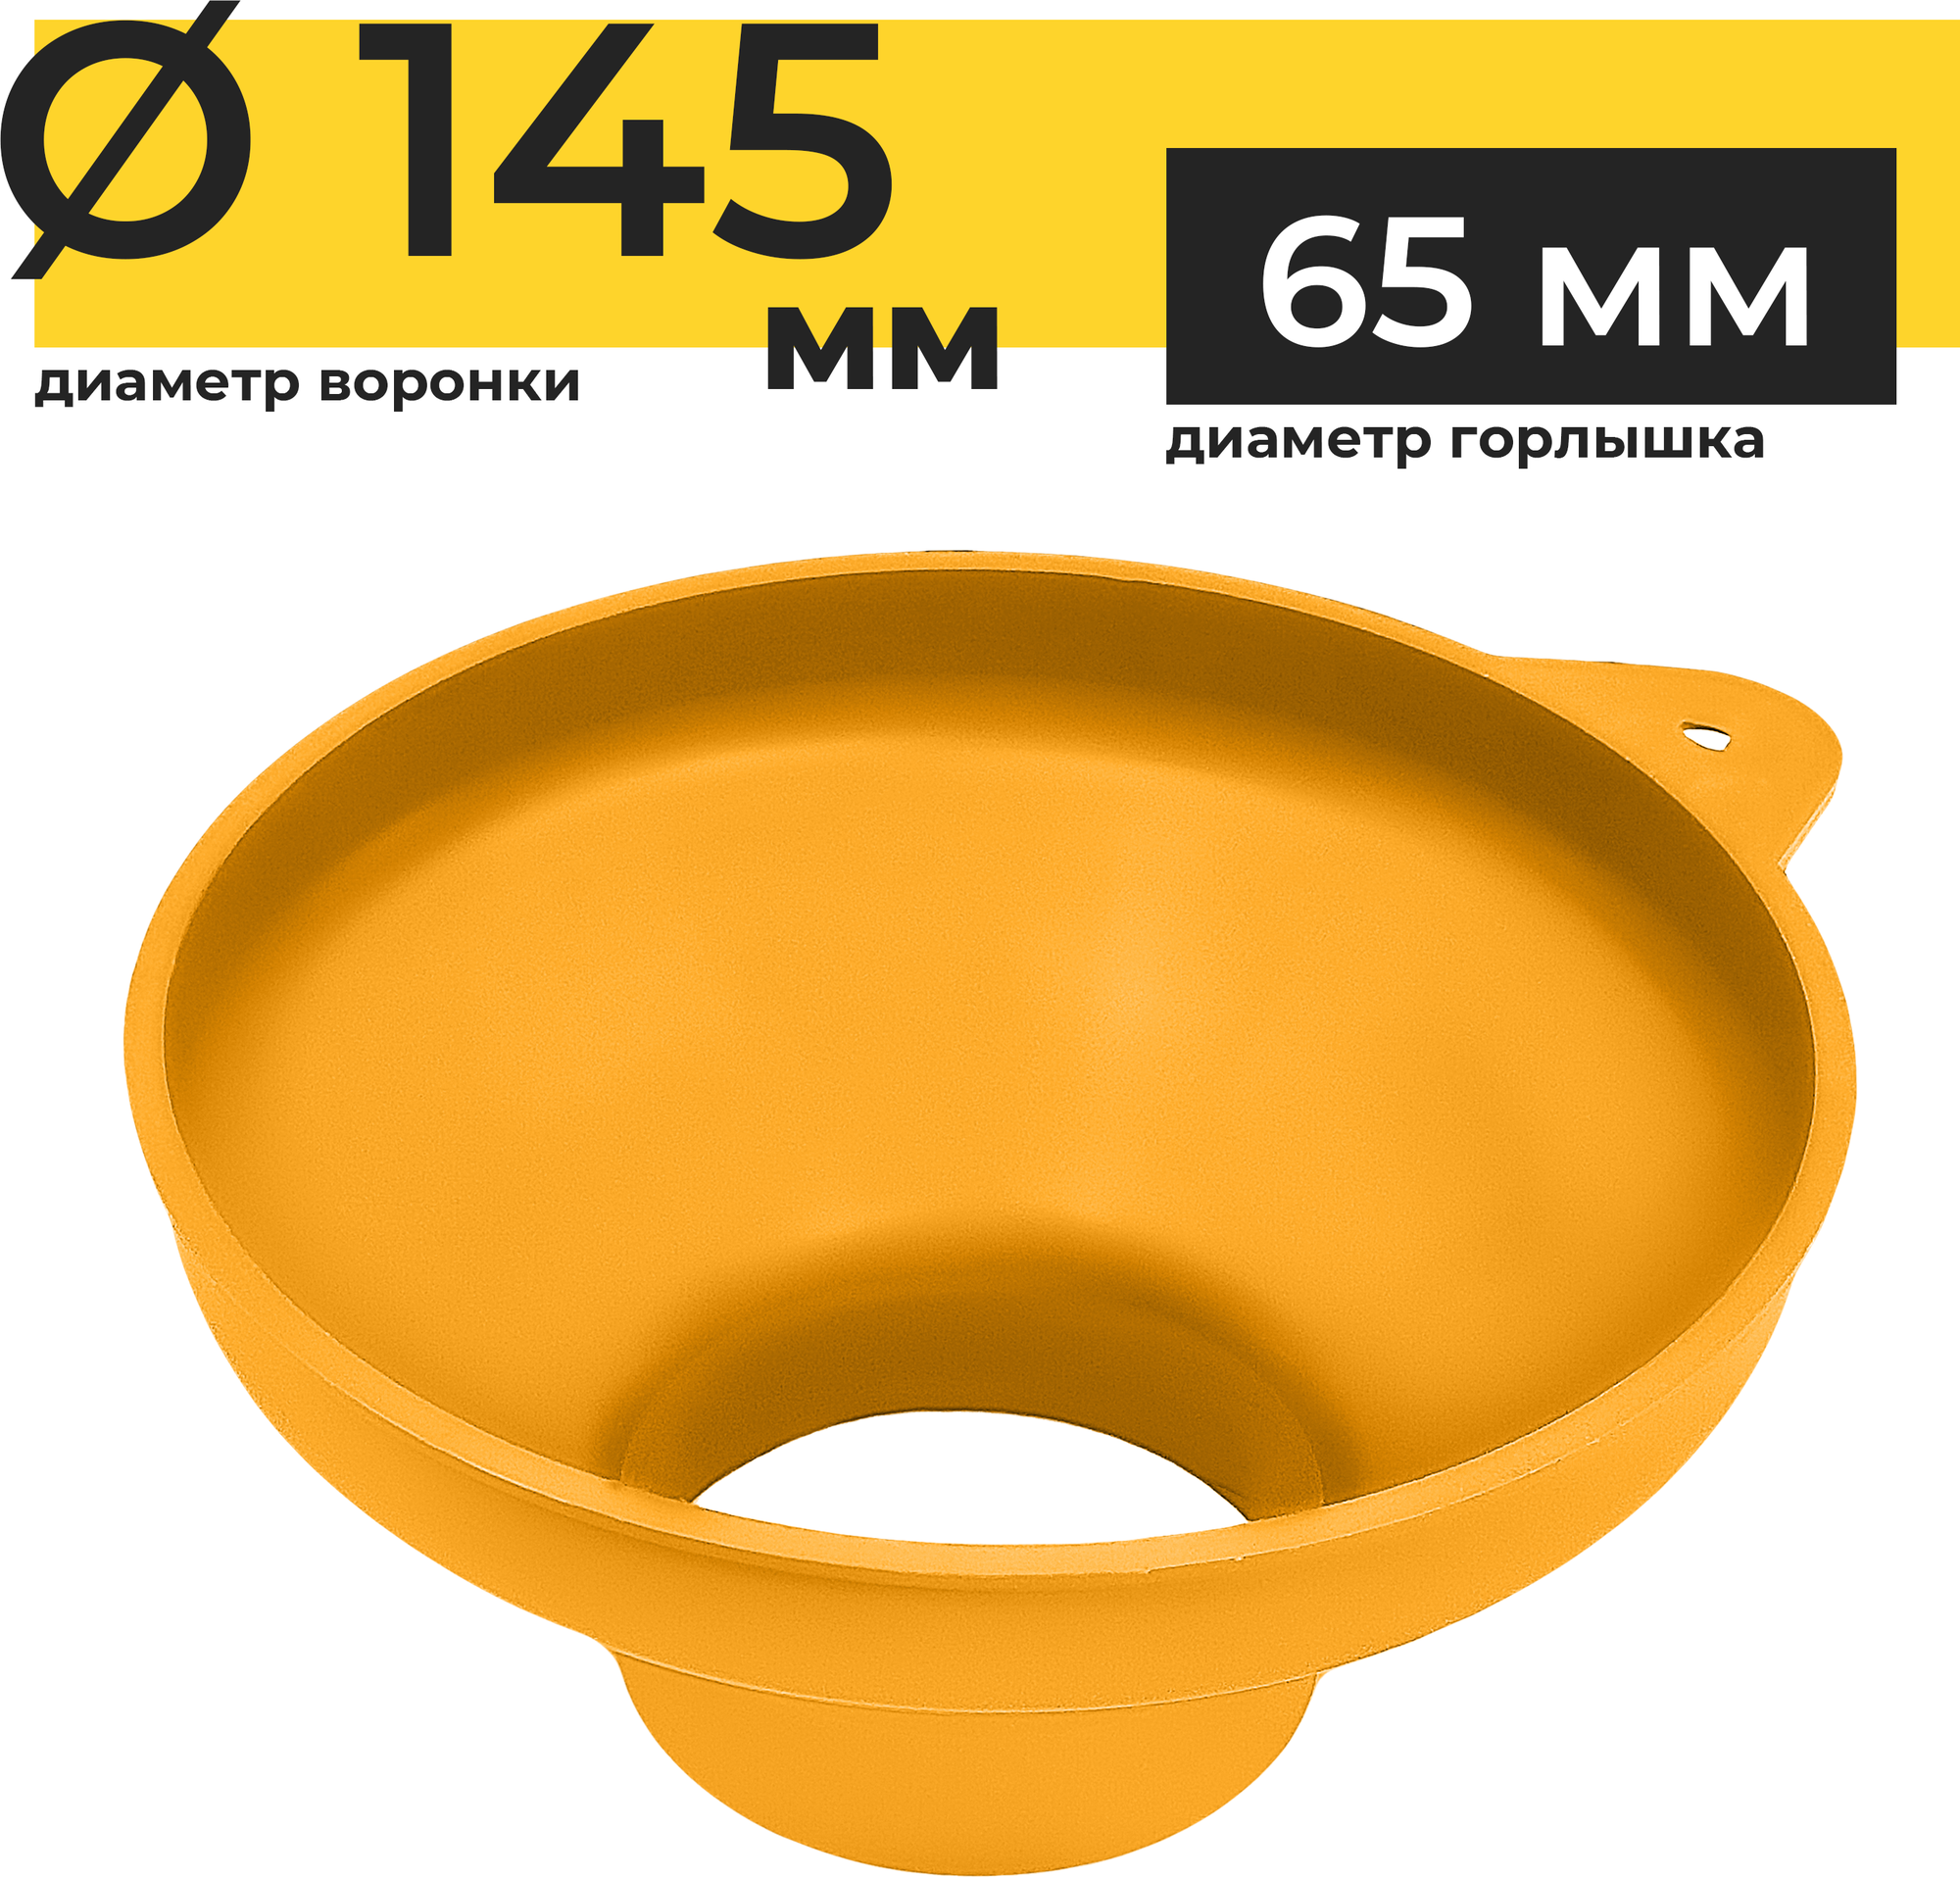 Воронка кухонная Yoma Home d145мм для банок подходит для сухих жидких или вязких продуктов пластиковая оранжевая